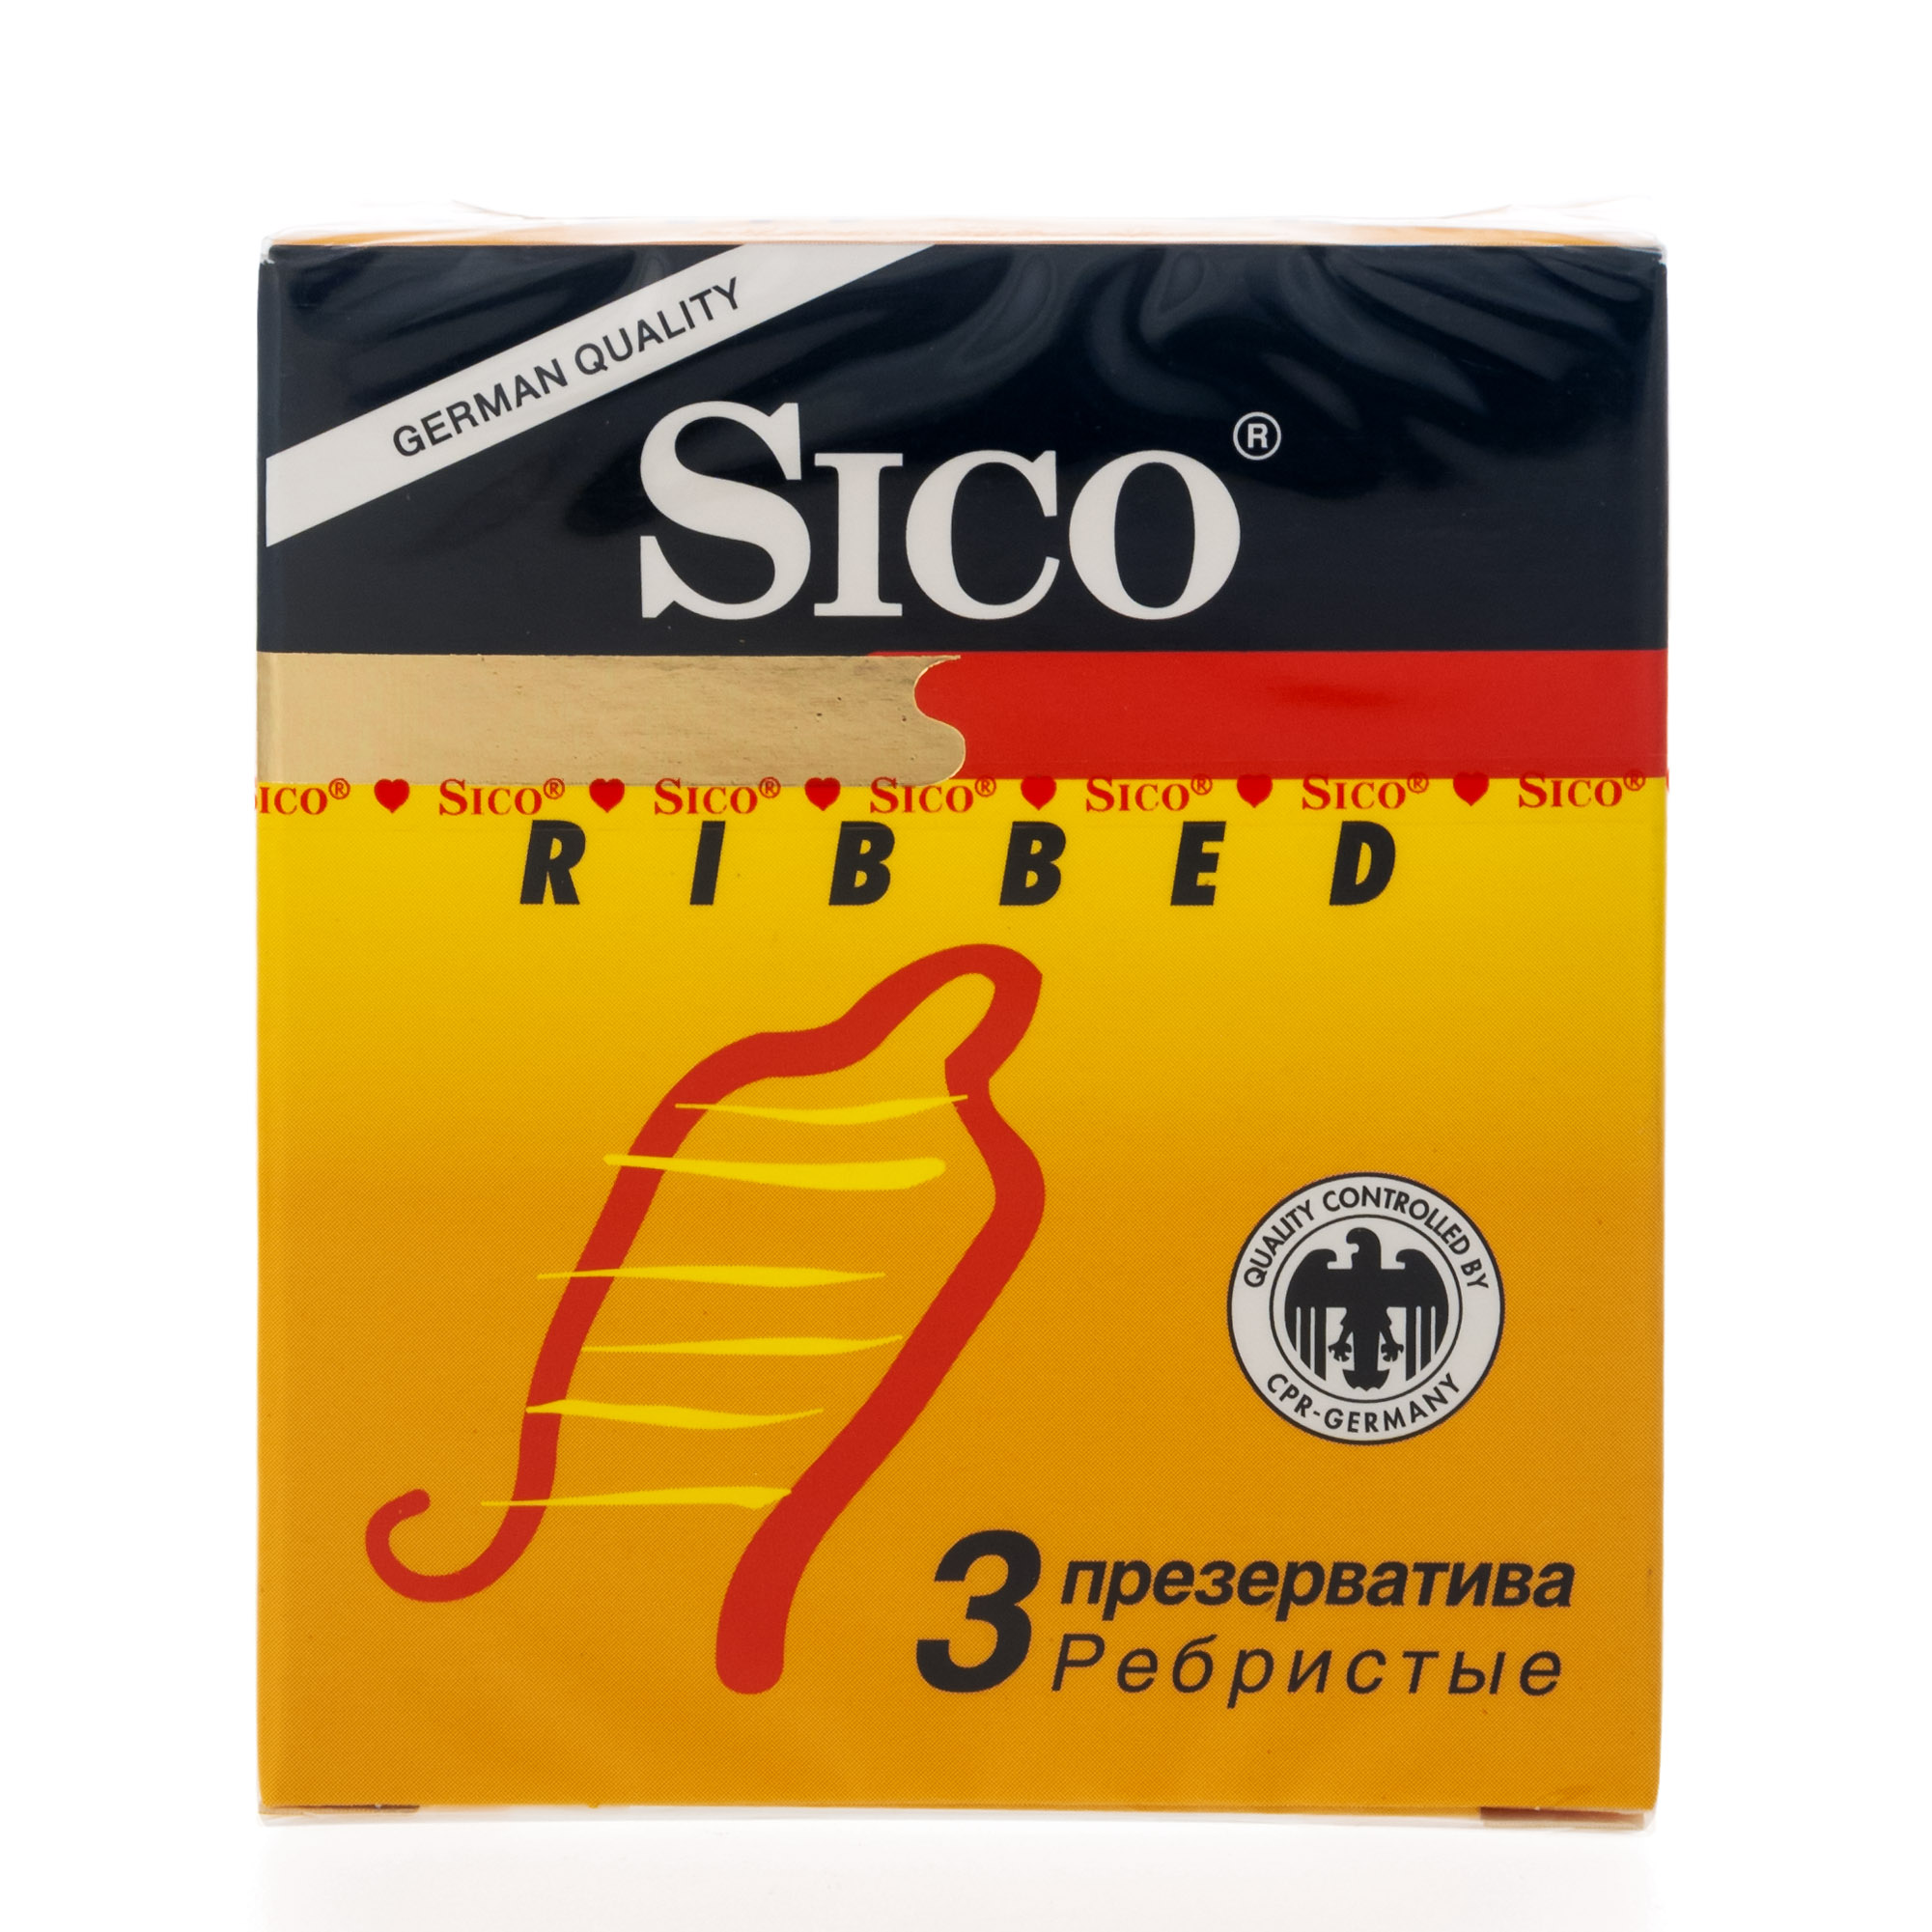 Сико презервативы Риббед ребристые №3 презервативы контекс риббед ребристые n3